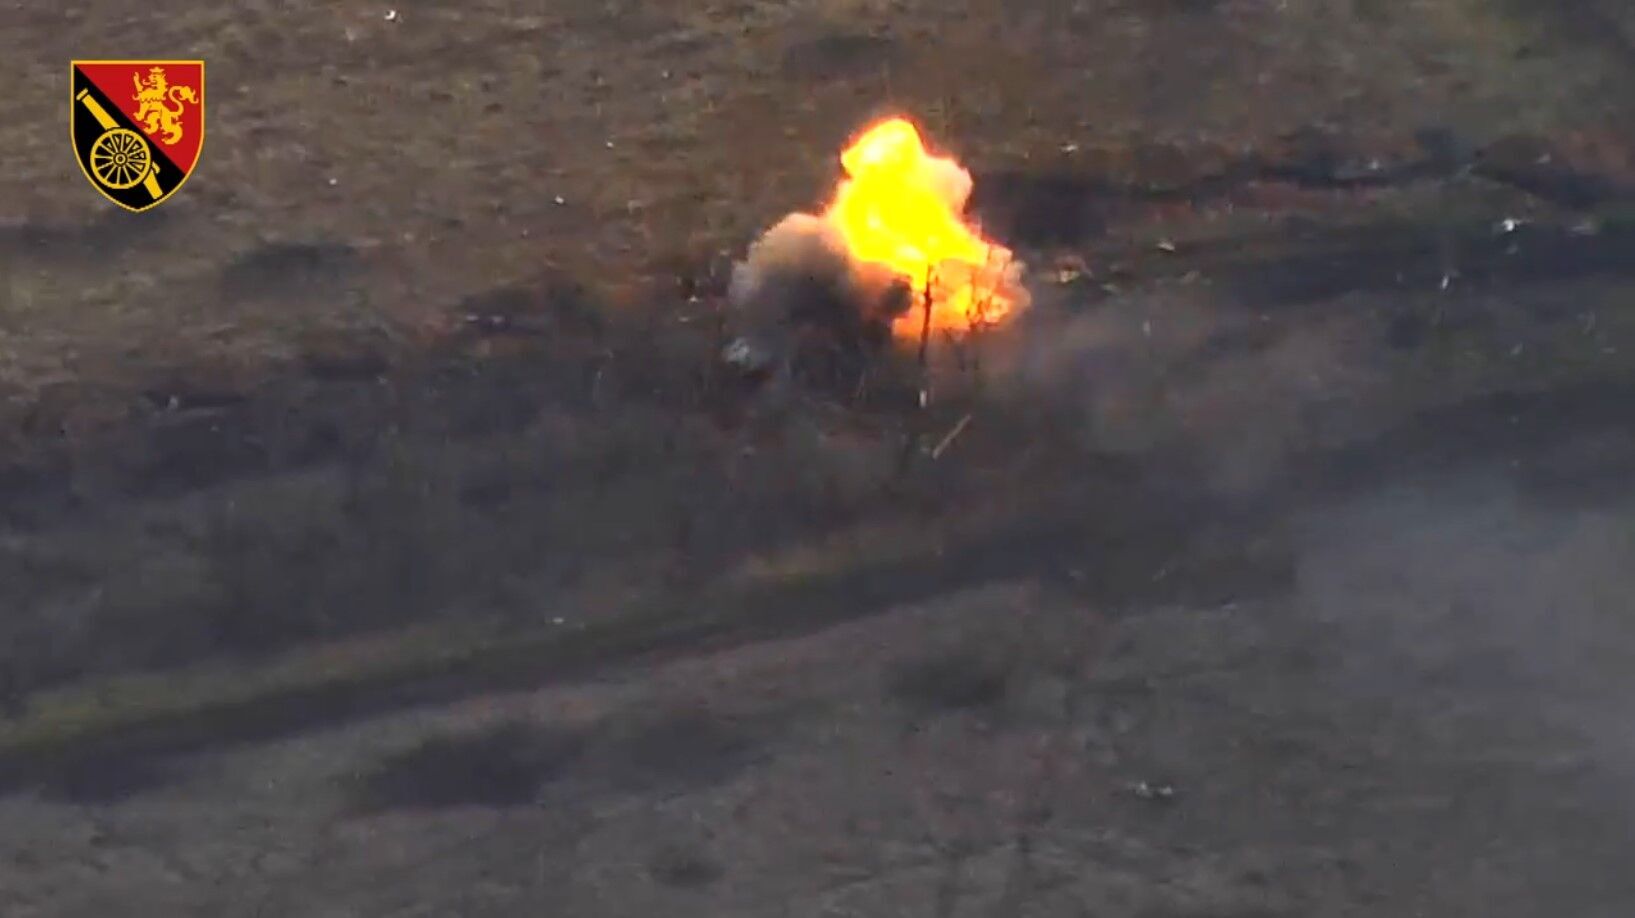 ''Бачимо ворога як на долоні'': українські артилеристи знищили БМП та польовий склад БК загарбників під Бахмутом. Відео